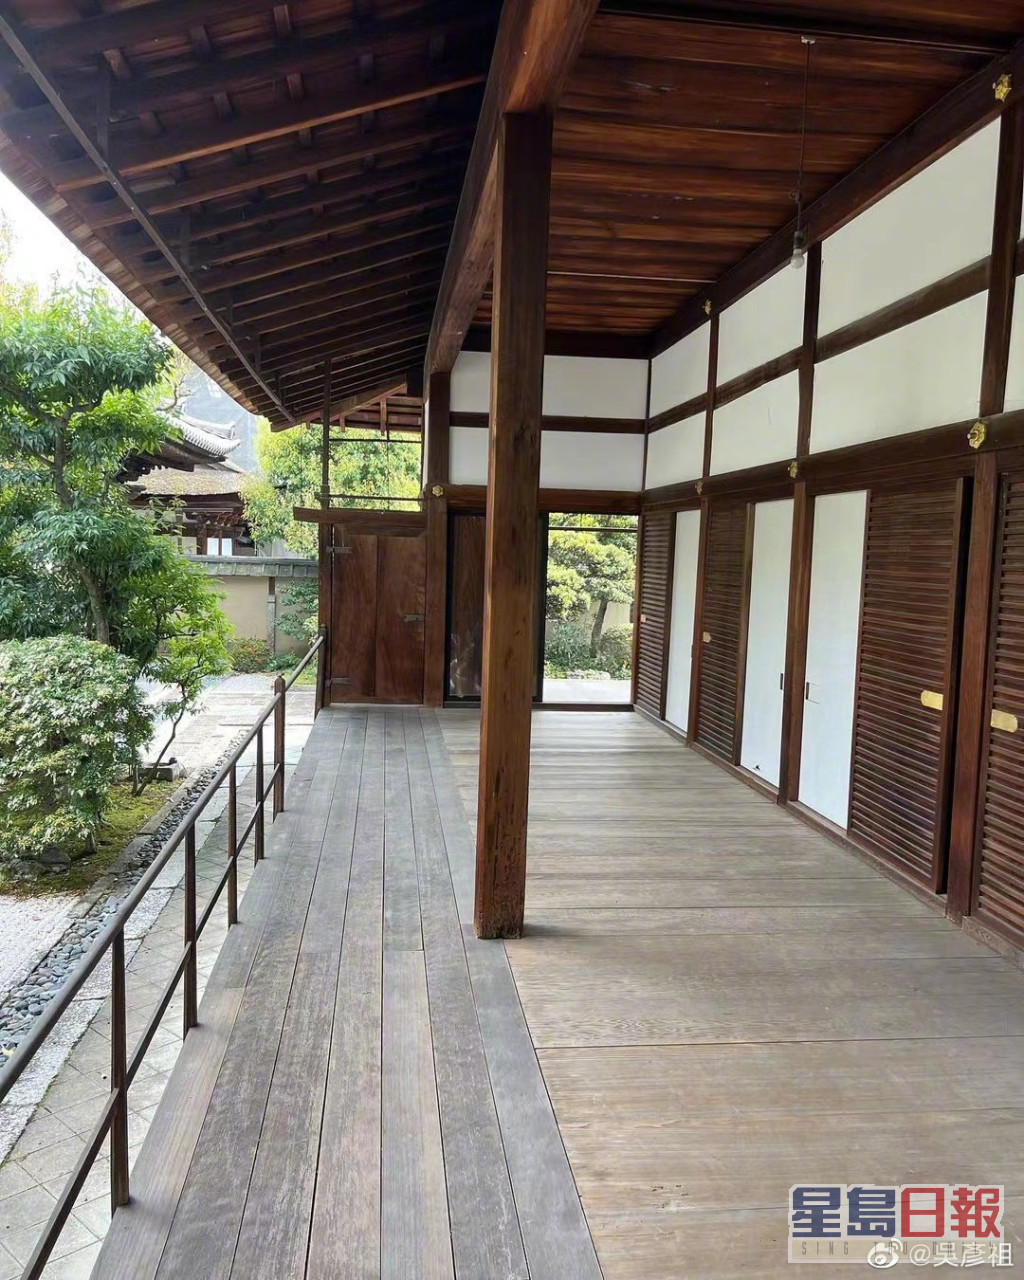 吴彦祖重访京都的妙心寺。